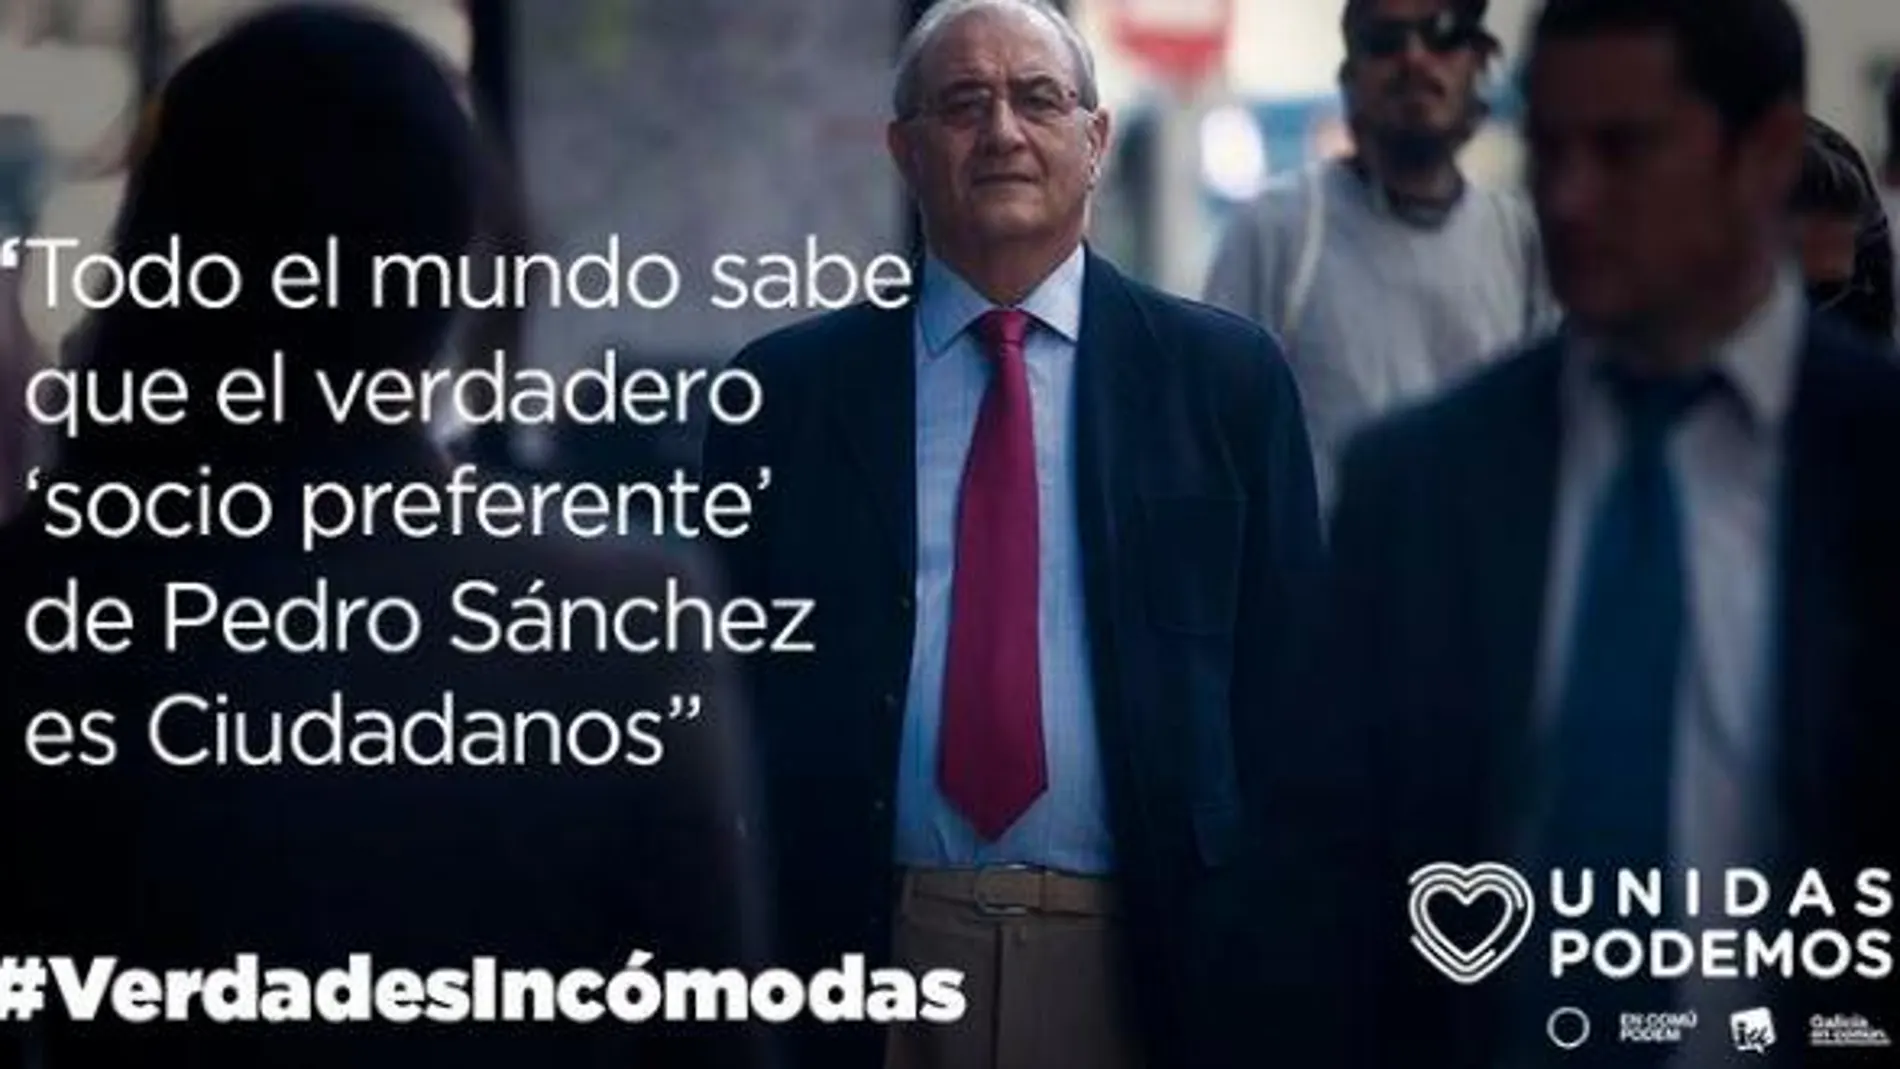 Uno de los mesajes colgados en Twitter con el hastag #Verdadesincómodas.